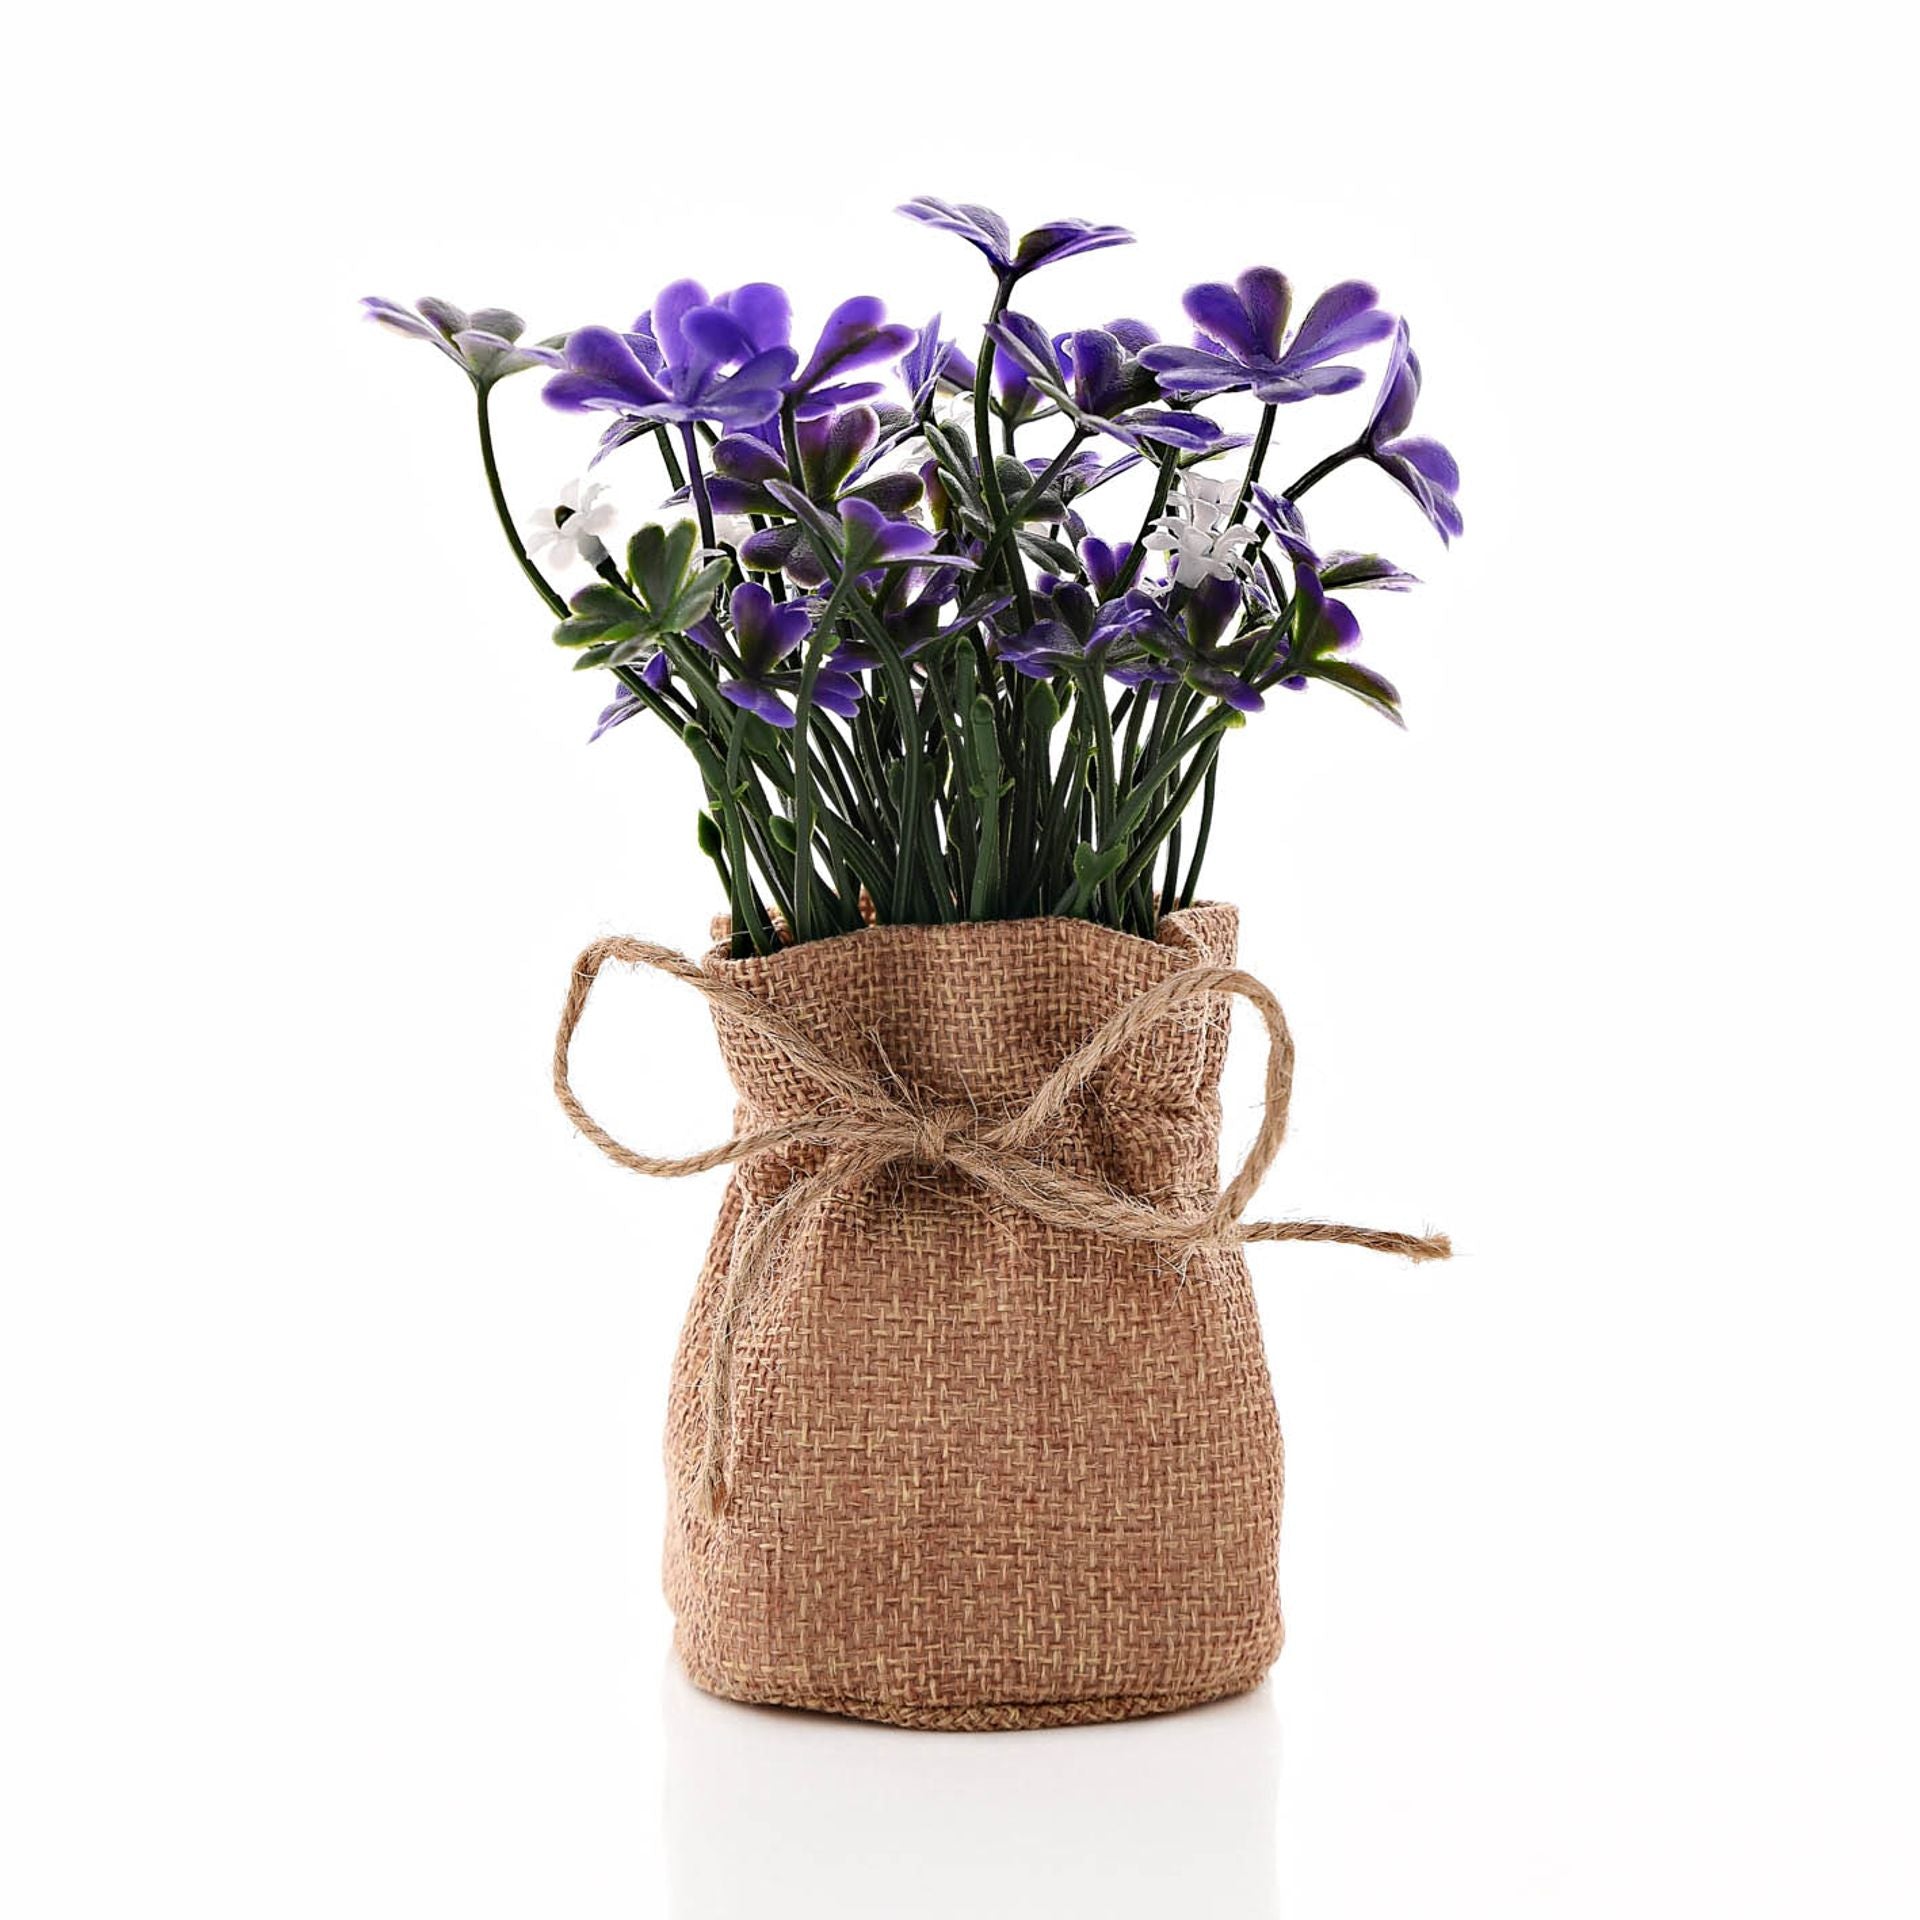 Purple Flower Faux Plant in Hessian Sack 15cm